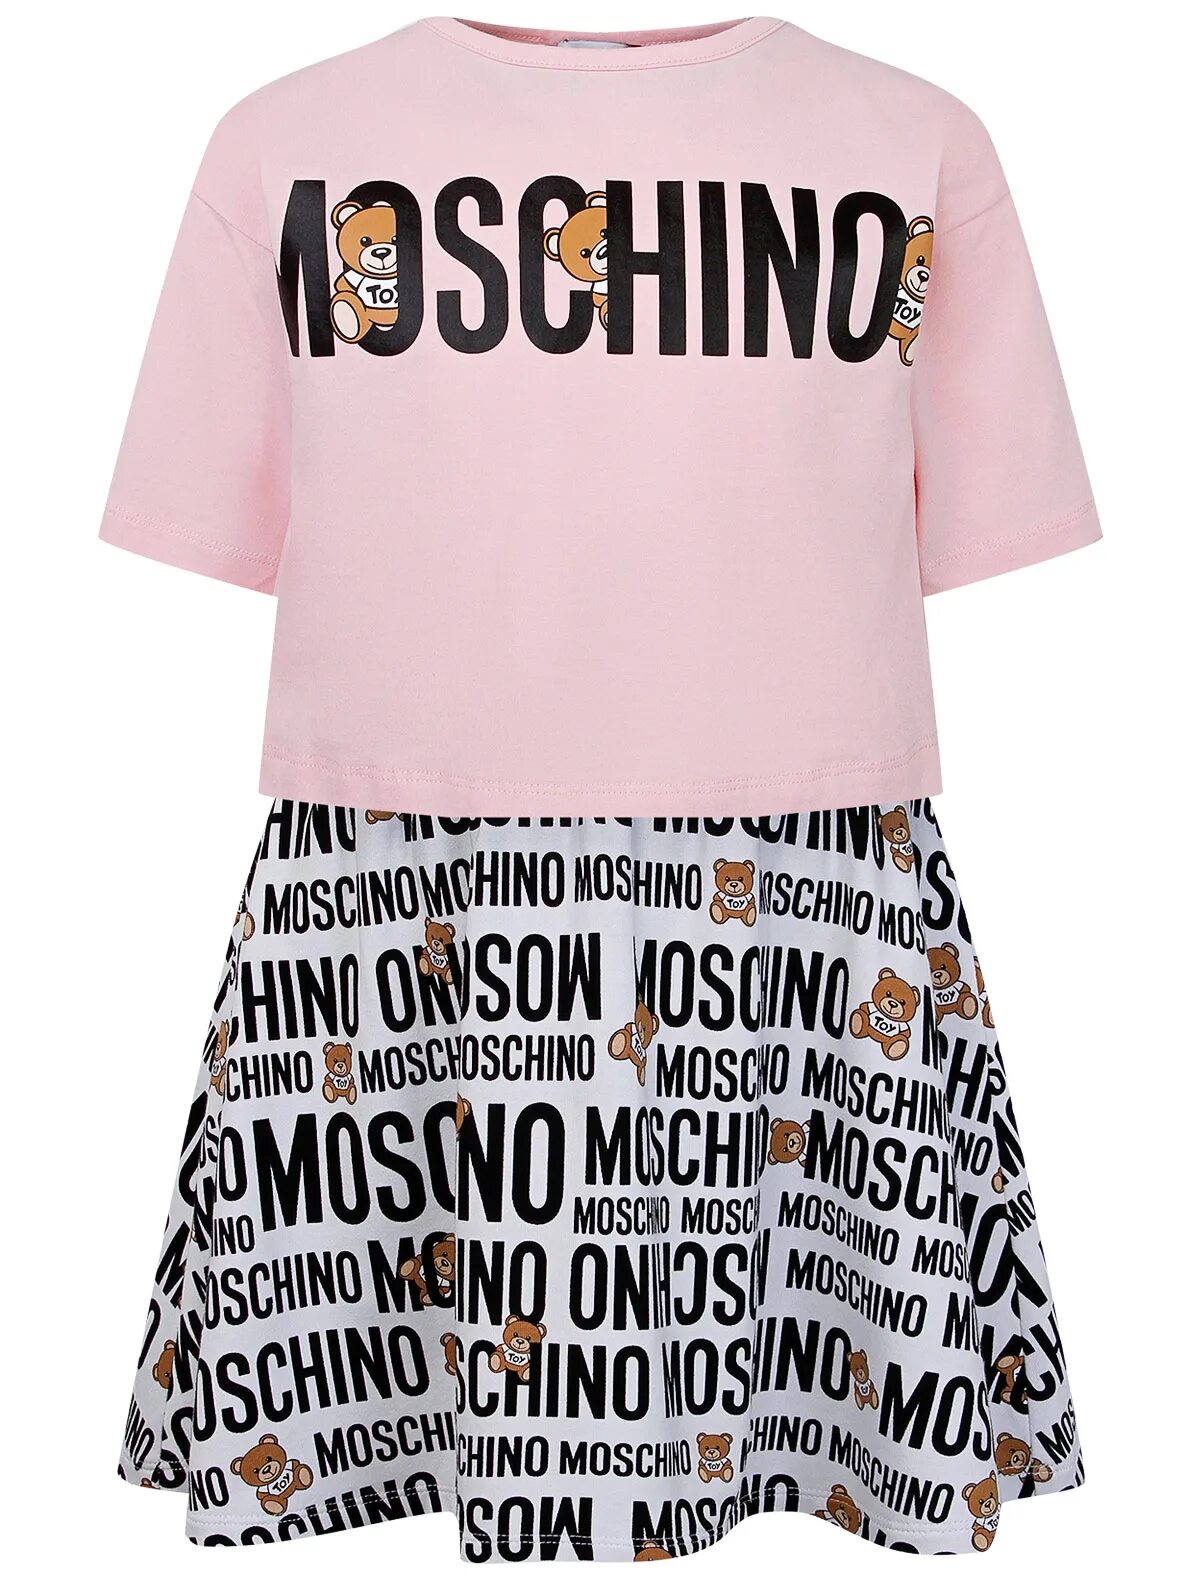 Москино одежда. Костюм Москино. Платье Moschino. Москино бренд одежды. Детская брендовая одежда Moschino.